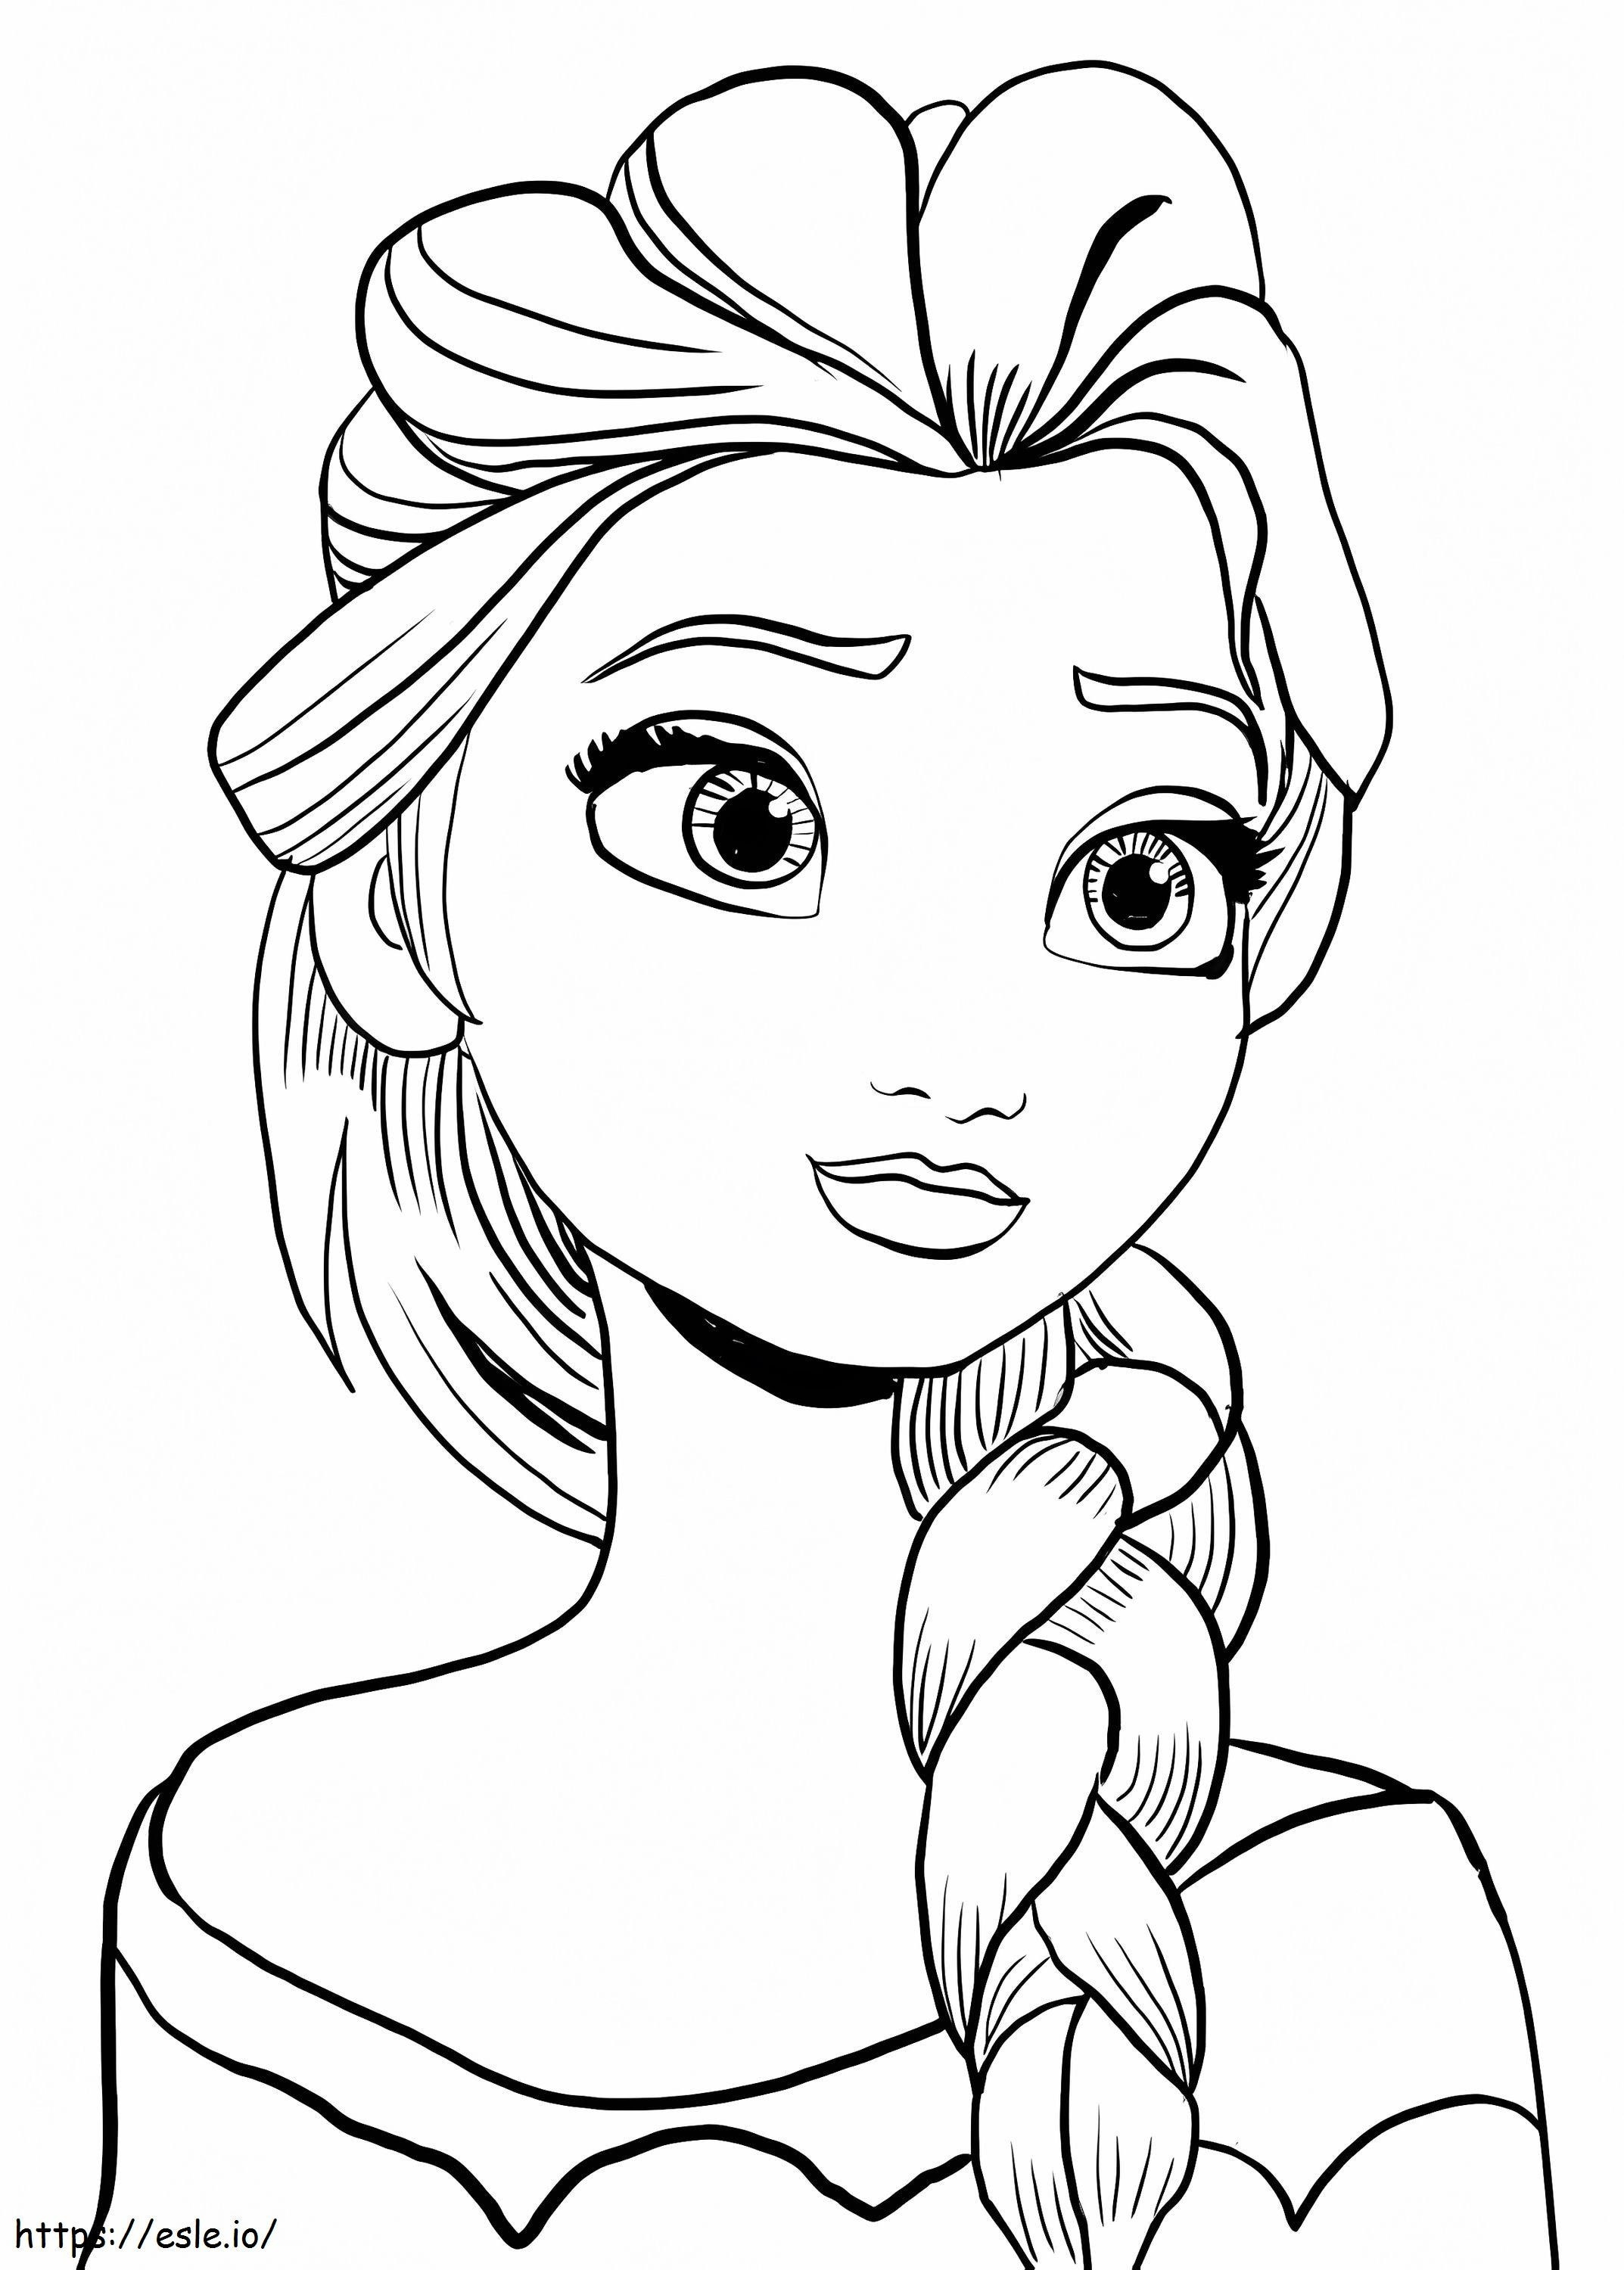 Nette Elsa ausmalbilder